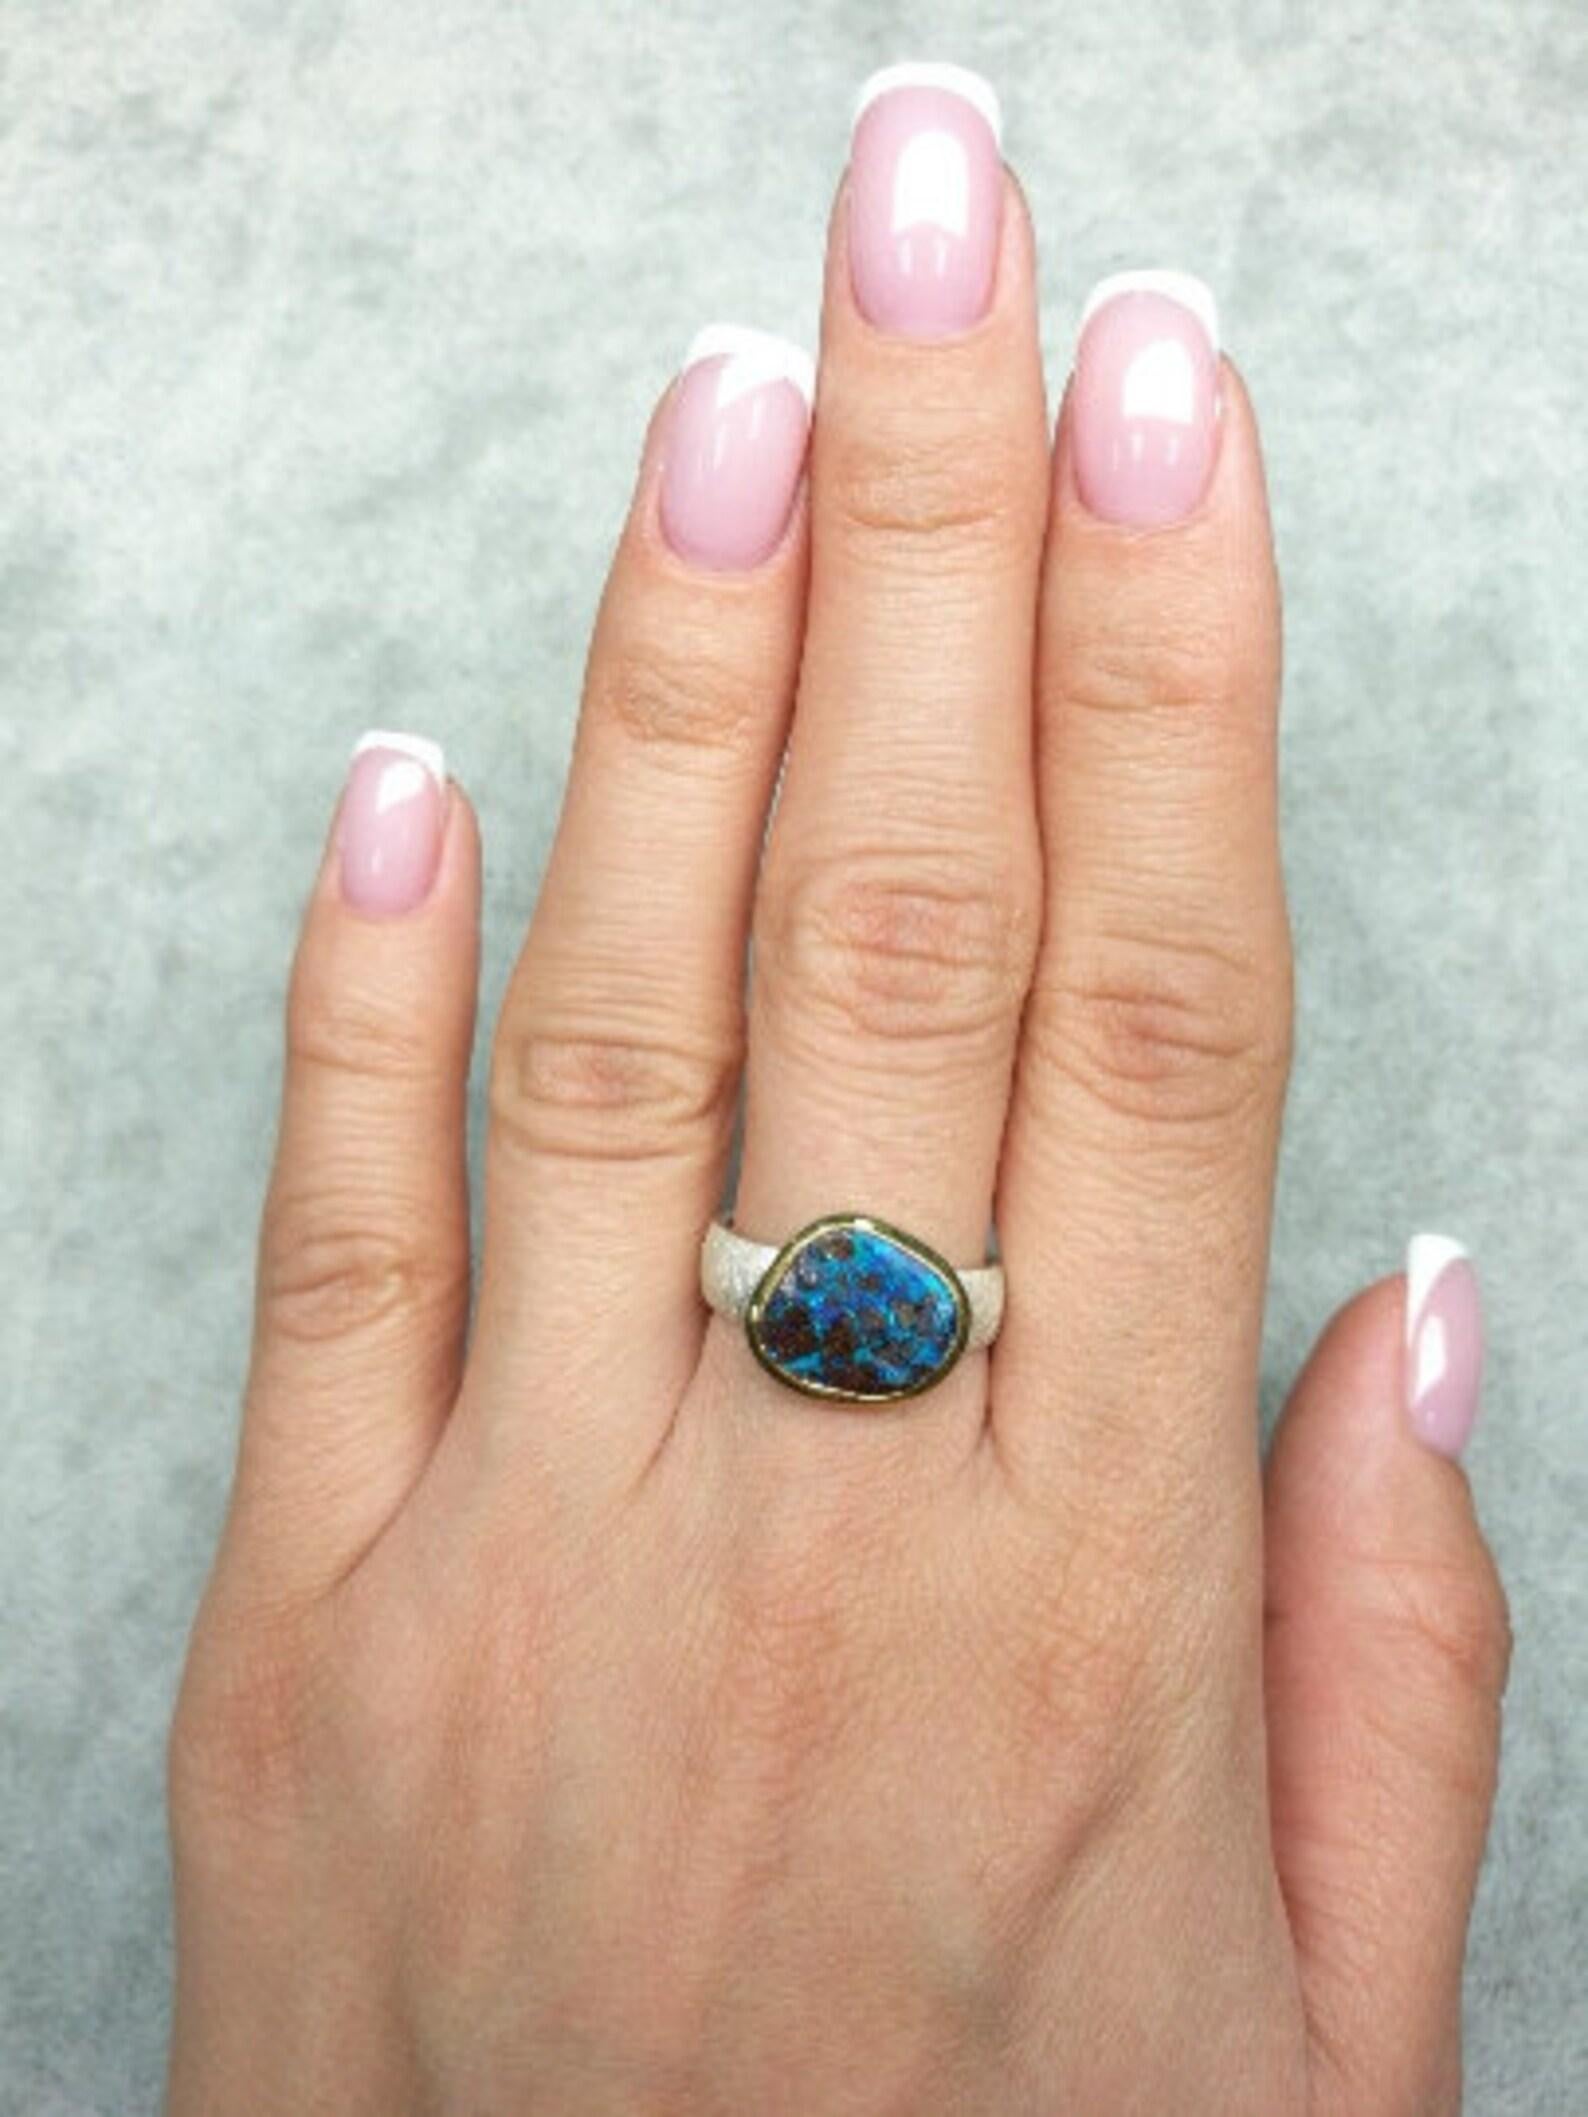 Bague en argent avec Opale de Boulder naturelle avec opalescence bleue
Origine de la pierre précieuse - Australie
la taille des gemmes est de 0,2 x 0,35 x 0,43 in / 5 x 9 x 11 mm
Taille de la bague - 6.5 US
Poids de l'anneau - 4,29 grammes